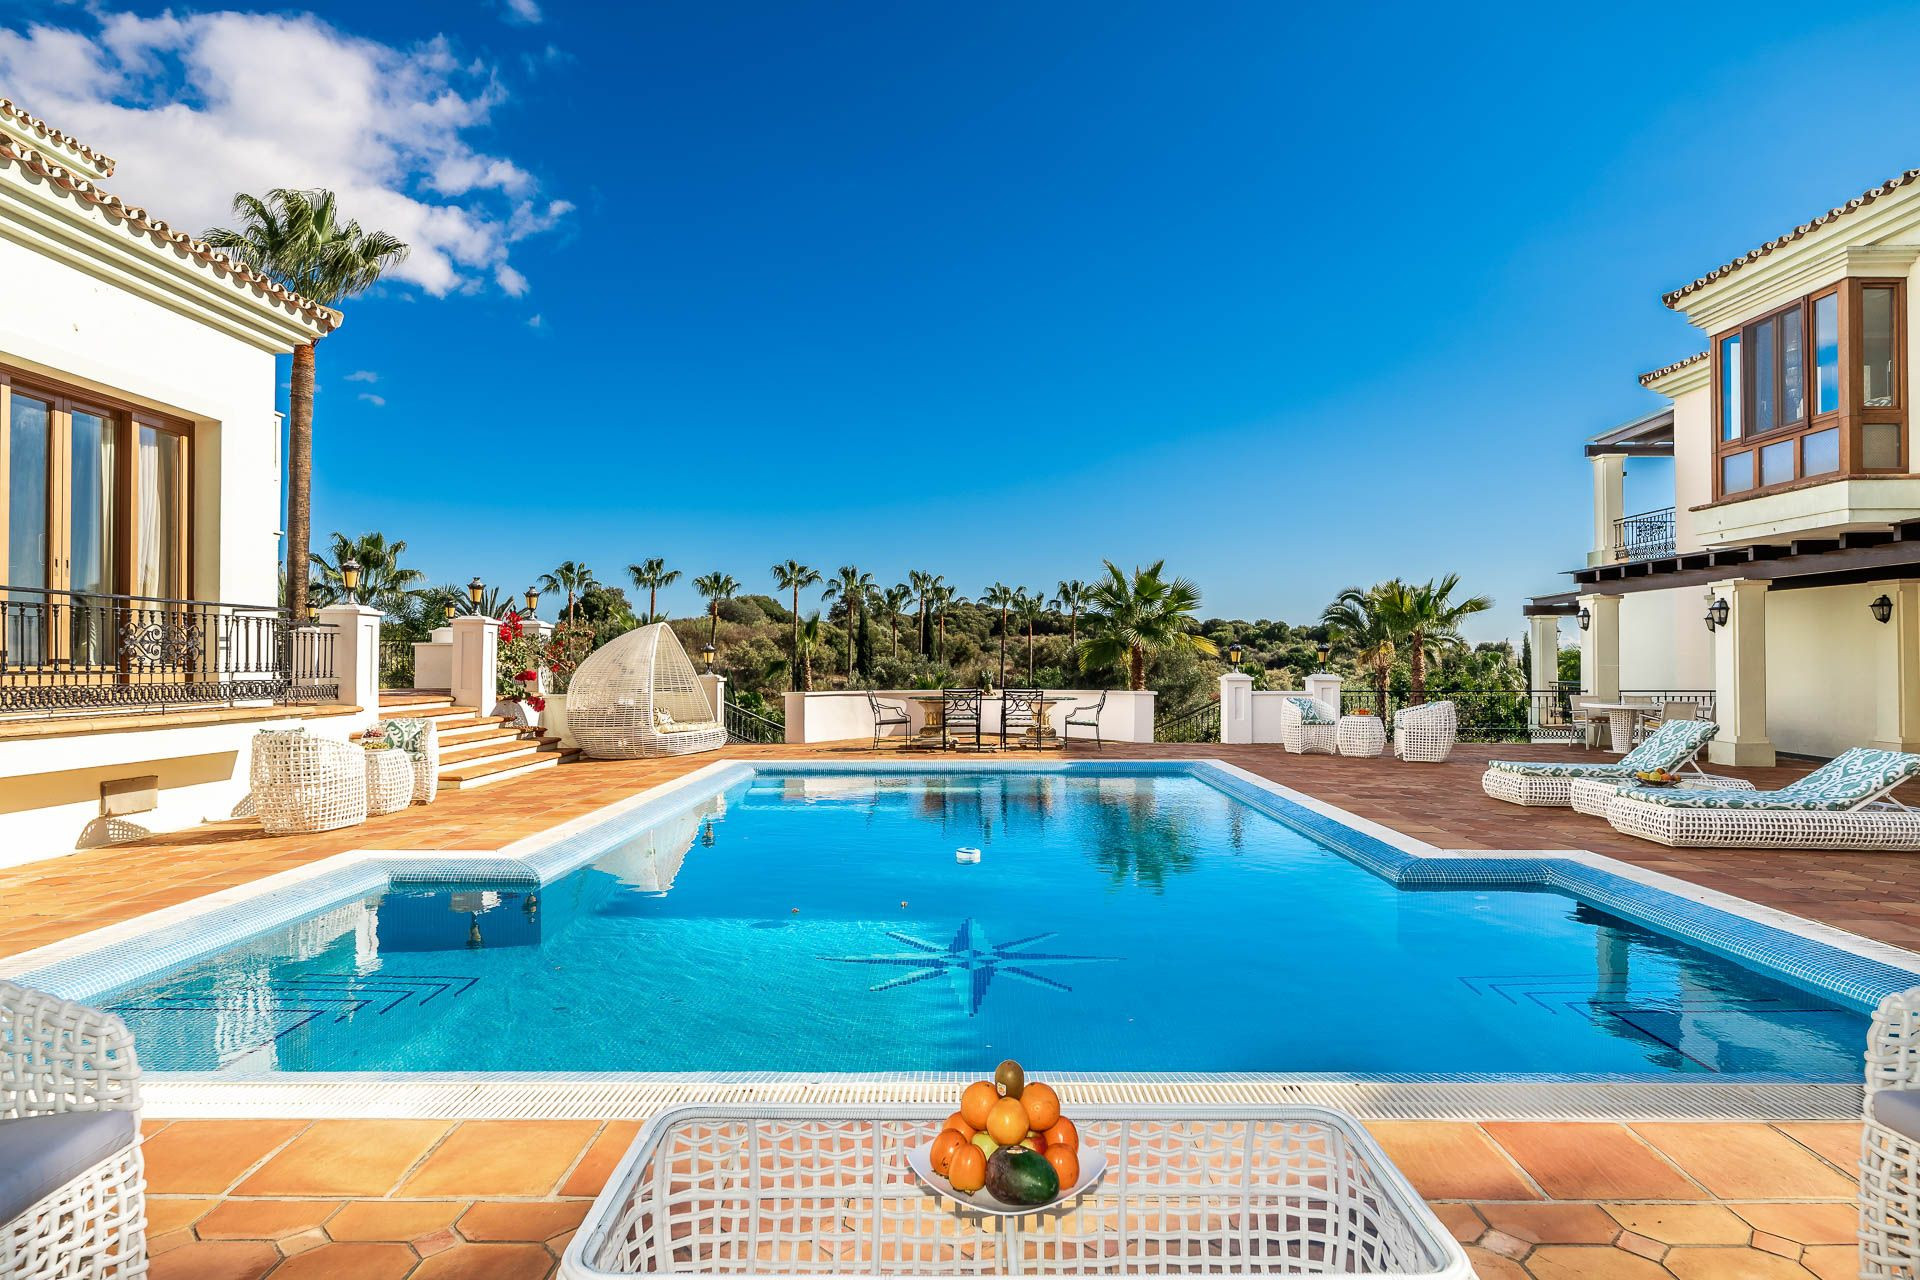 Lujoso palacete mediterráneo de 16 habitaciones situado en la zona de El Paraíso Alto rodeado de los mejores campos de golf de la Costa del Sol